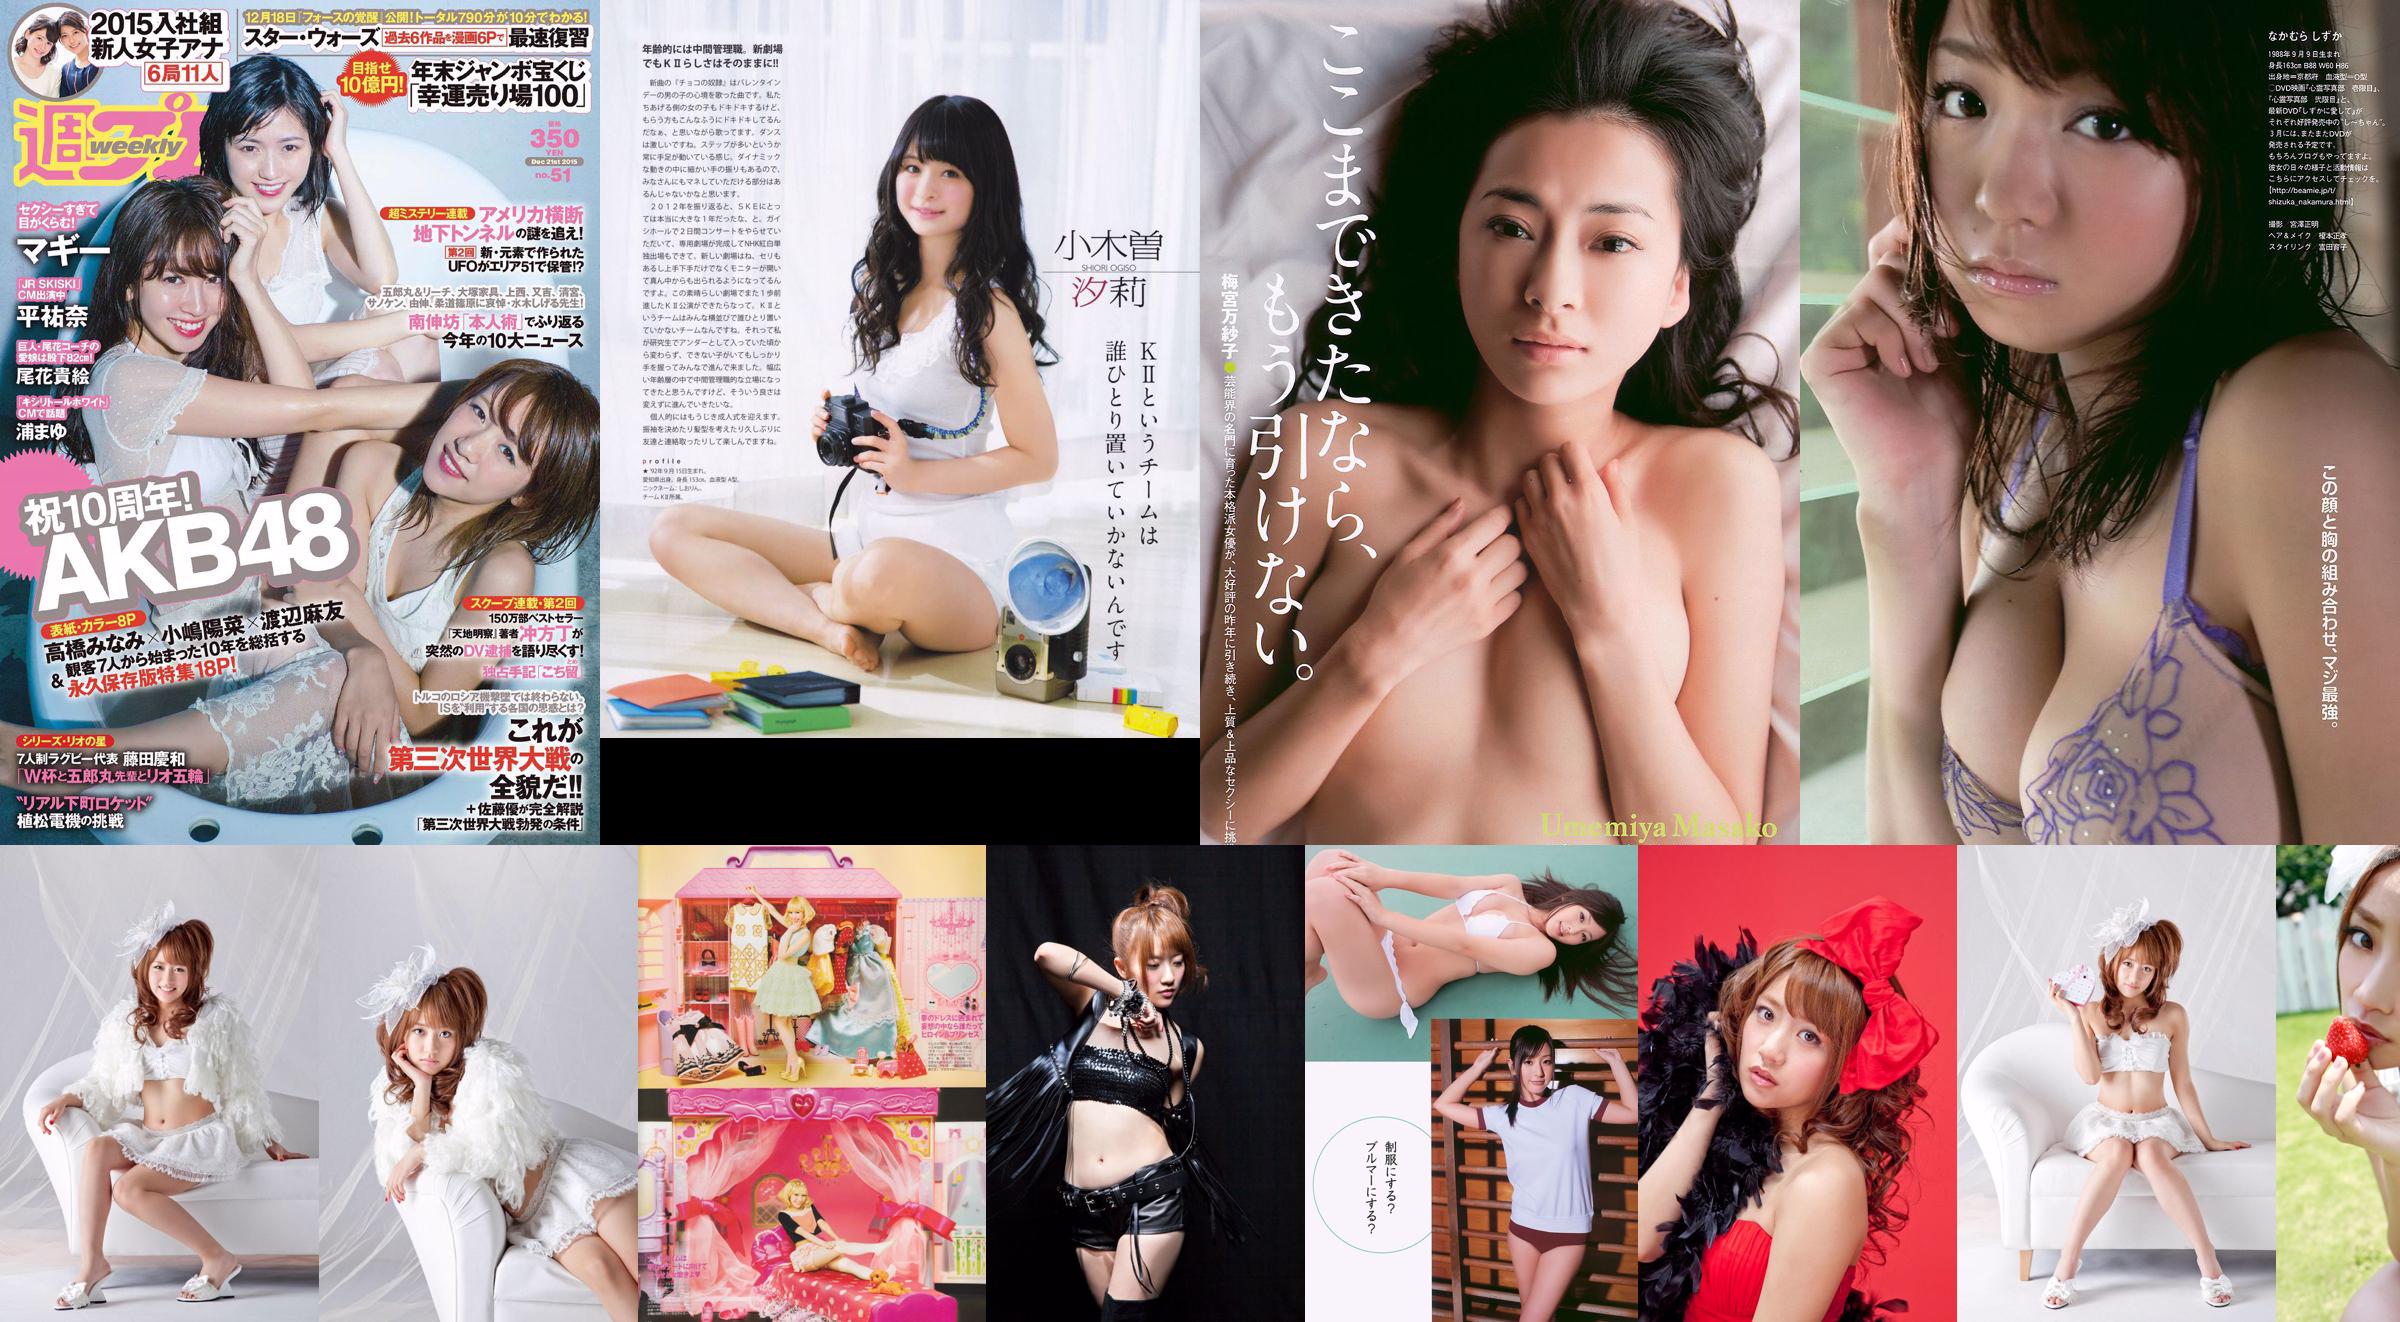 Minami Takahashi Haruna Kojima Mayu Watanabe Maggie Takae Obana Yuna Taira Mayu Ura Mitadera En [Weekly Playboy] 2015 Foto No 51 No.f15f80 Página 1